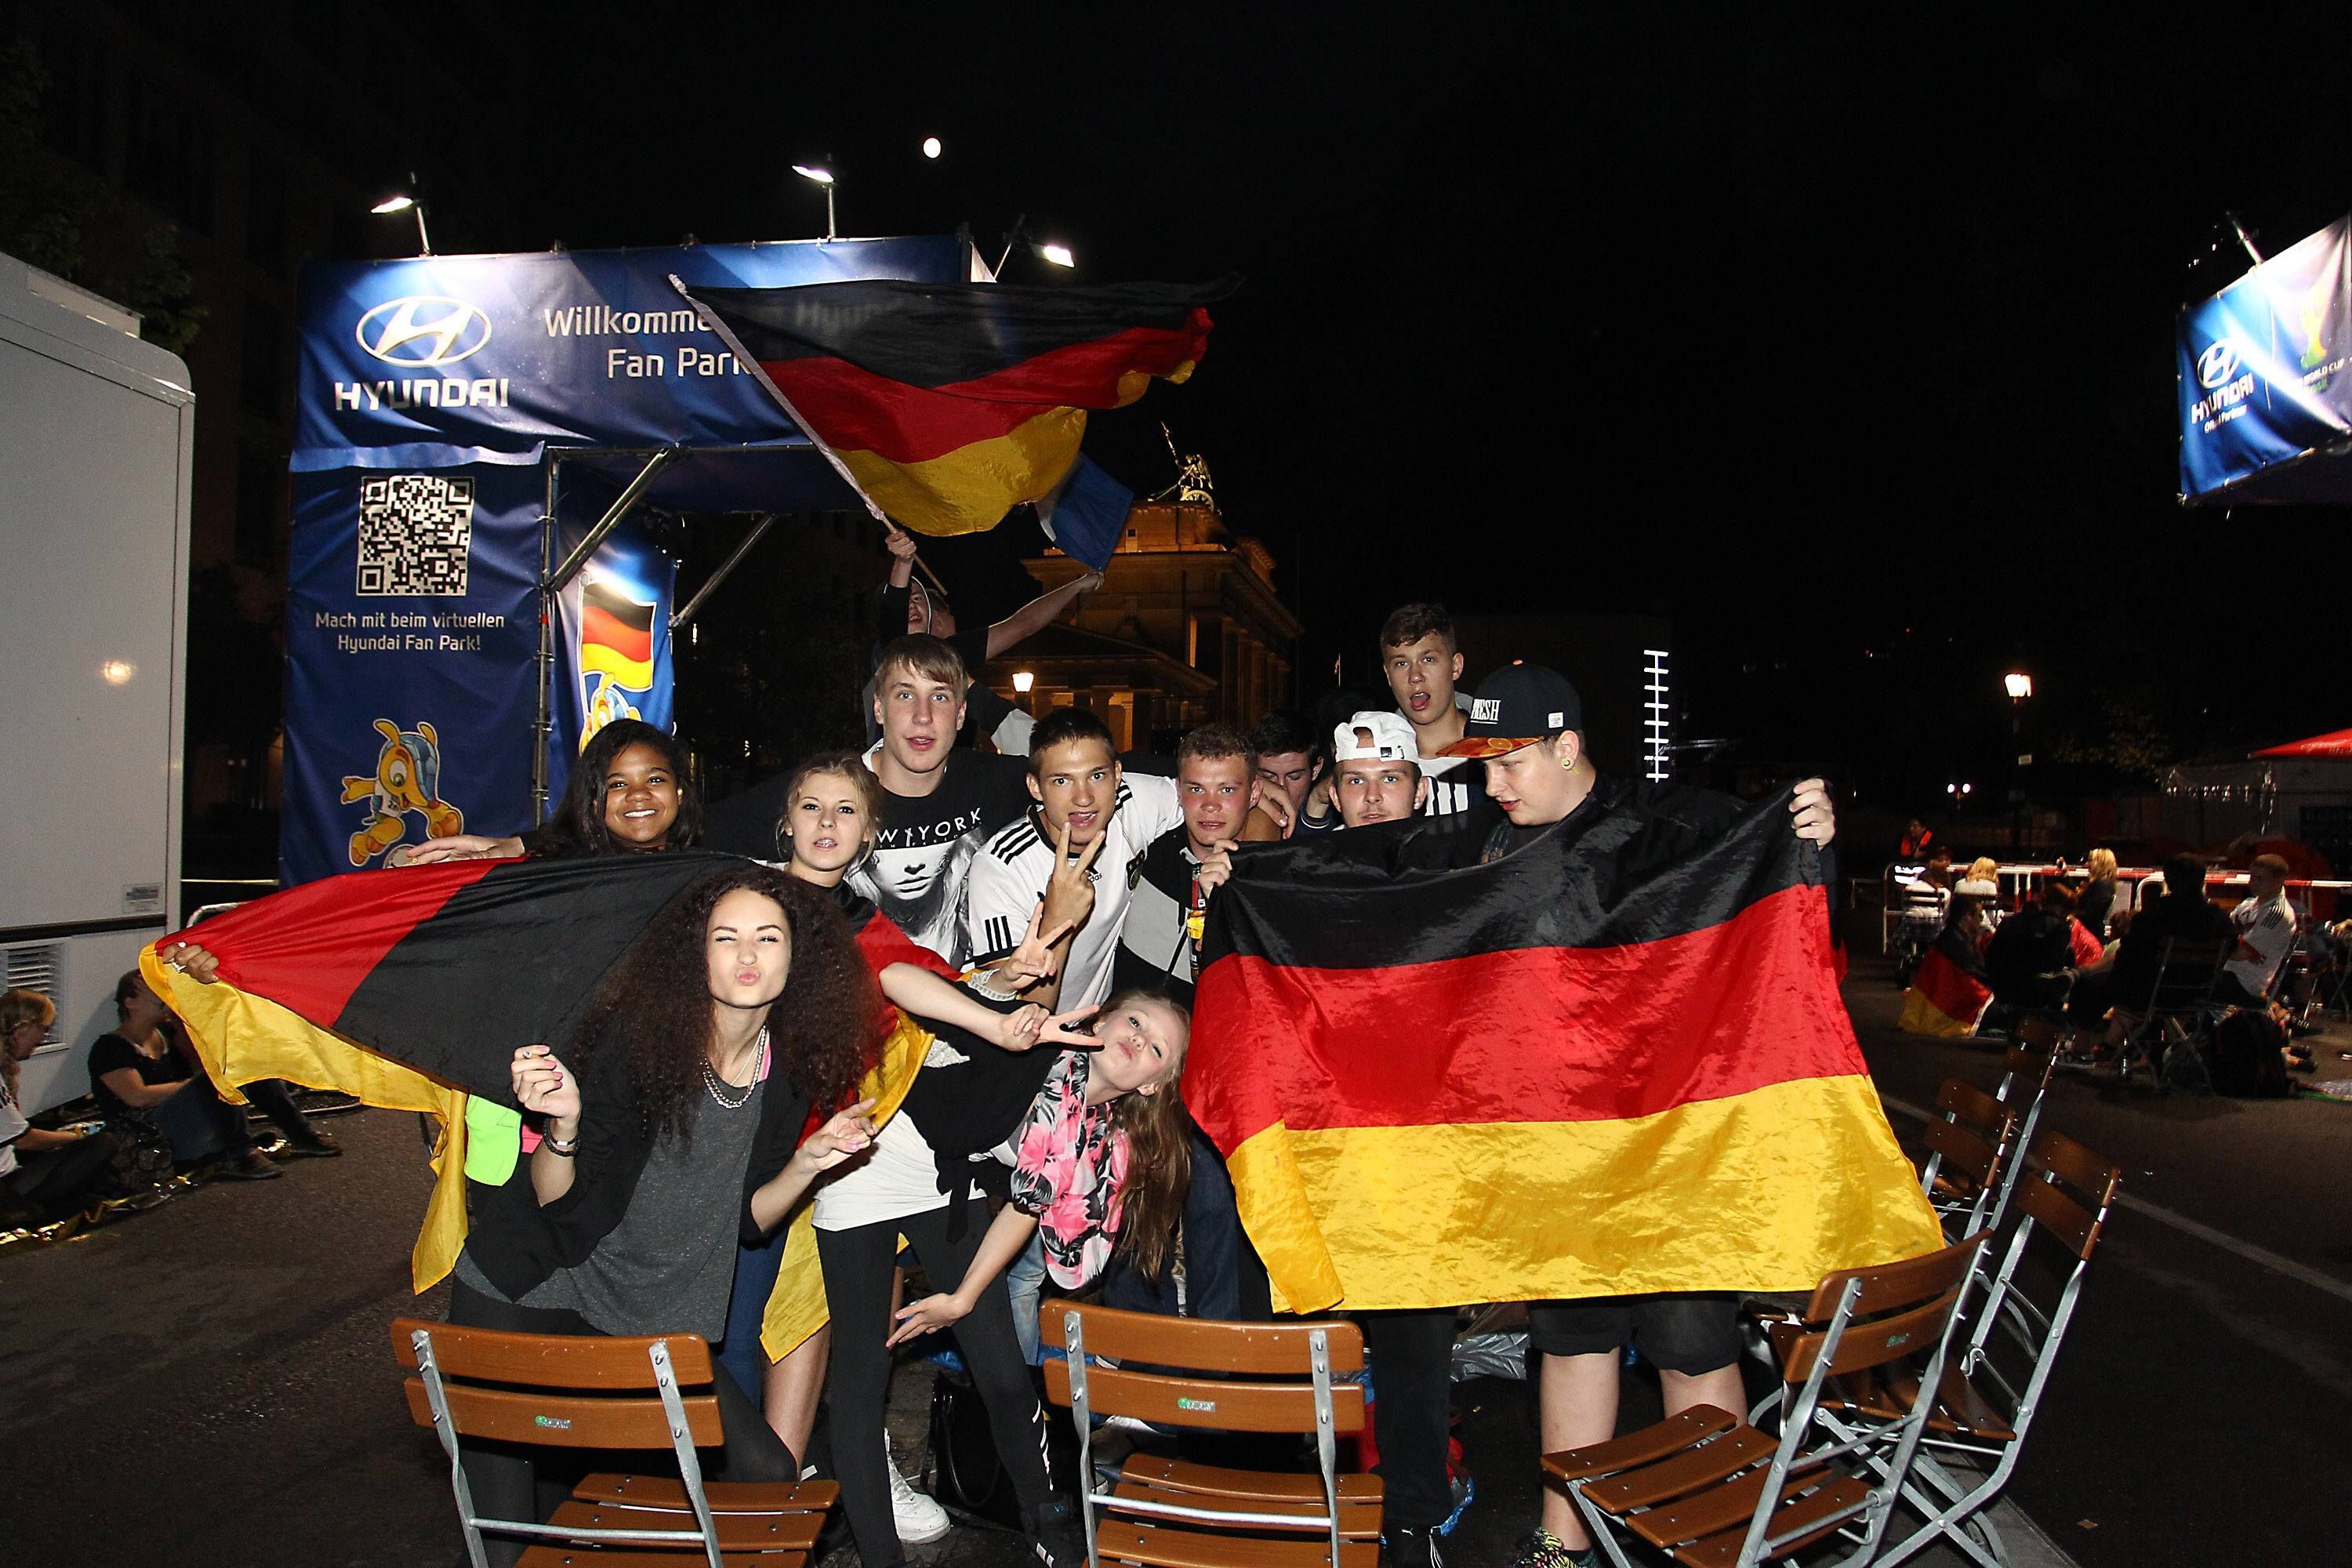 
                <strong>Übernachtung an der Fanmeile</strong><br>
                Berliner Fans übernachten an der Fanmeile, um sich später einen Blick auf die Nationalmannschaft zu sichern.
              